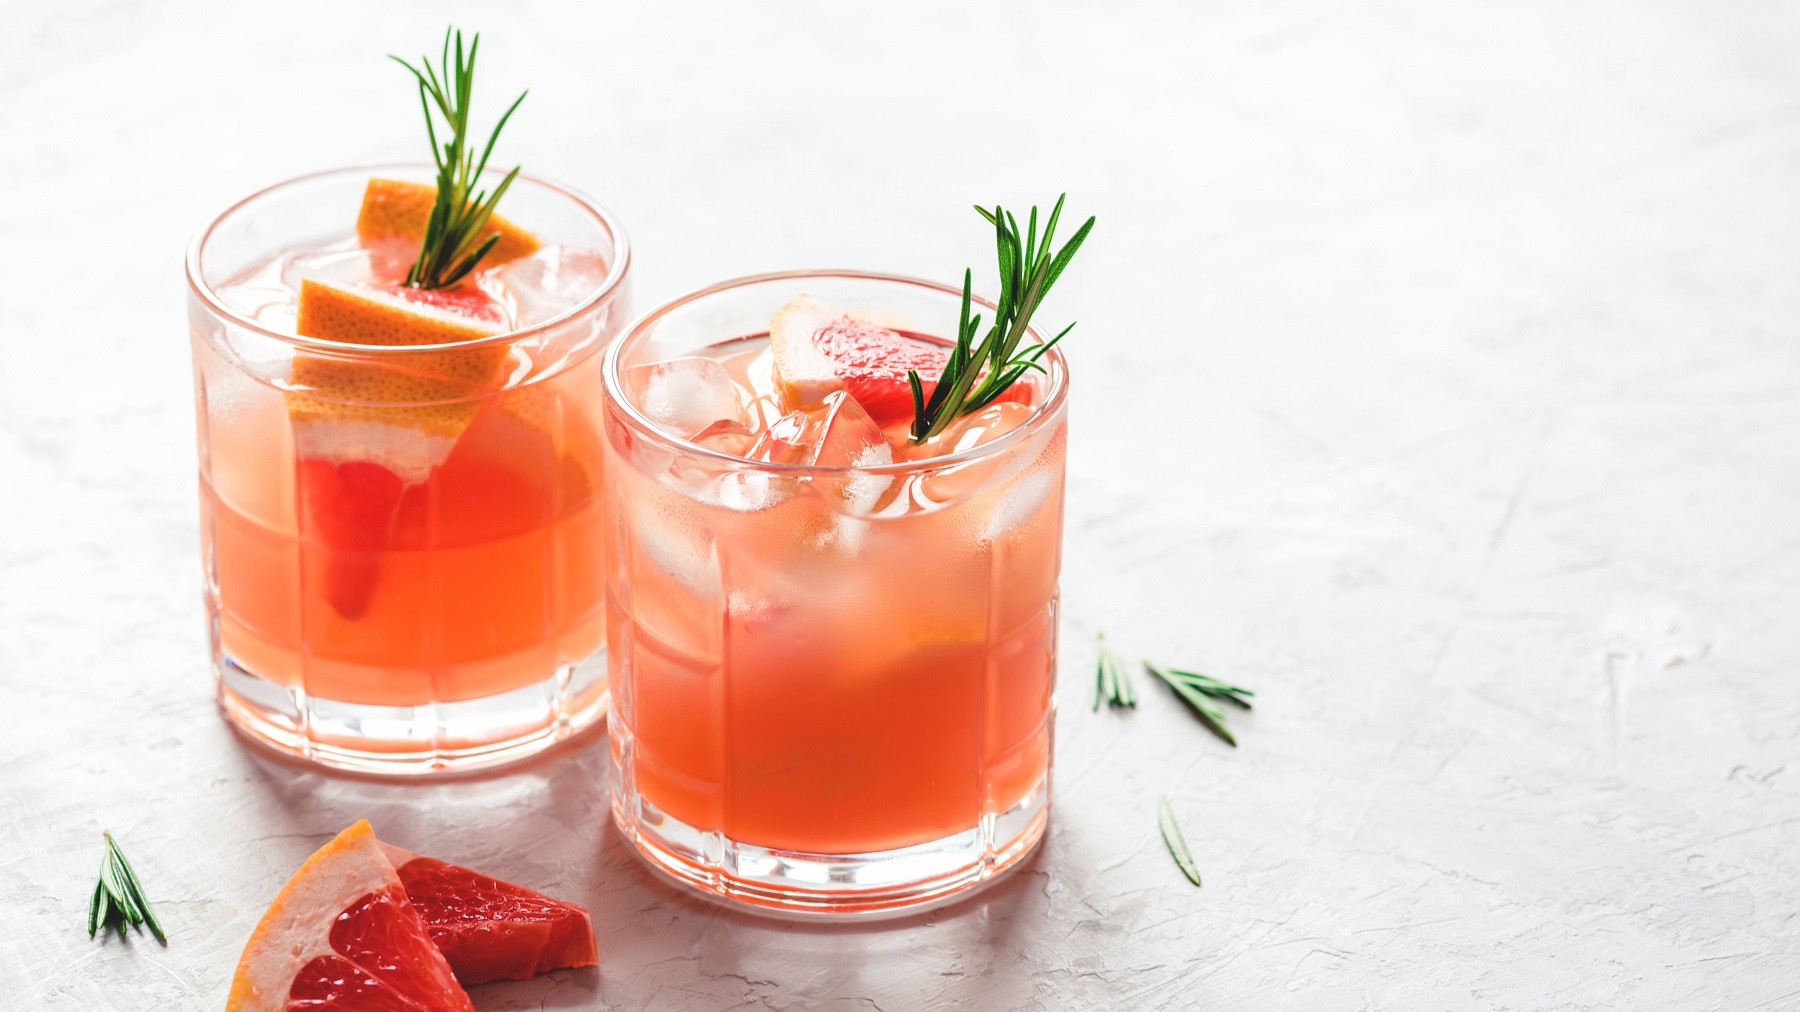 Zwei Gläser mit dem rötlichen Getränk auf einer weißen Tischfläche mit frischer Grapefruit und einigen Rosmarinnadeln. Alles leicht oben von der Seite fotografiert.